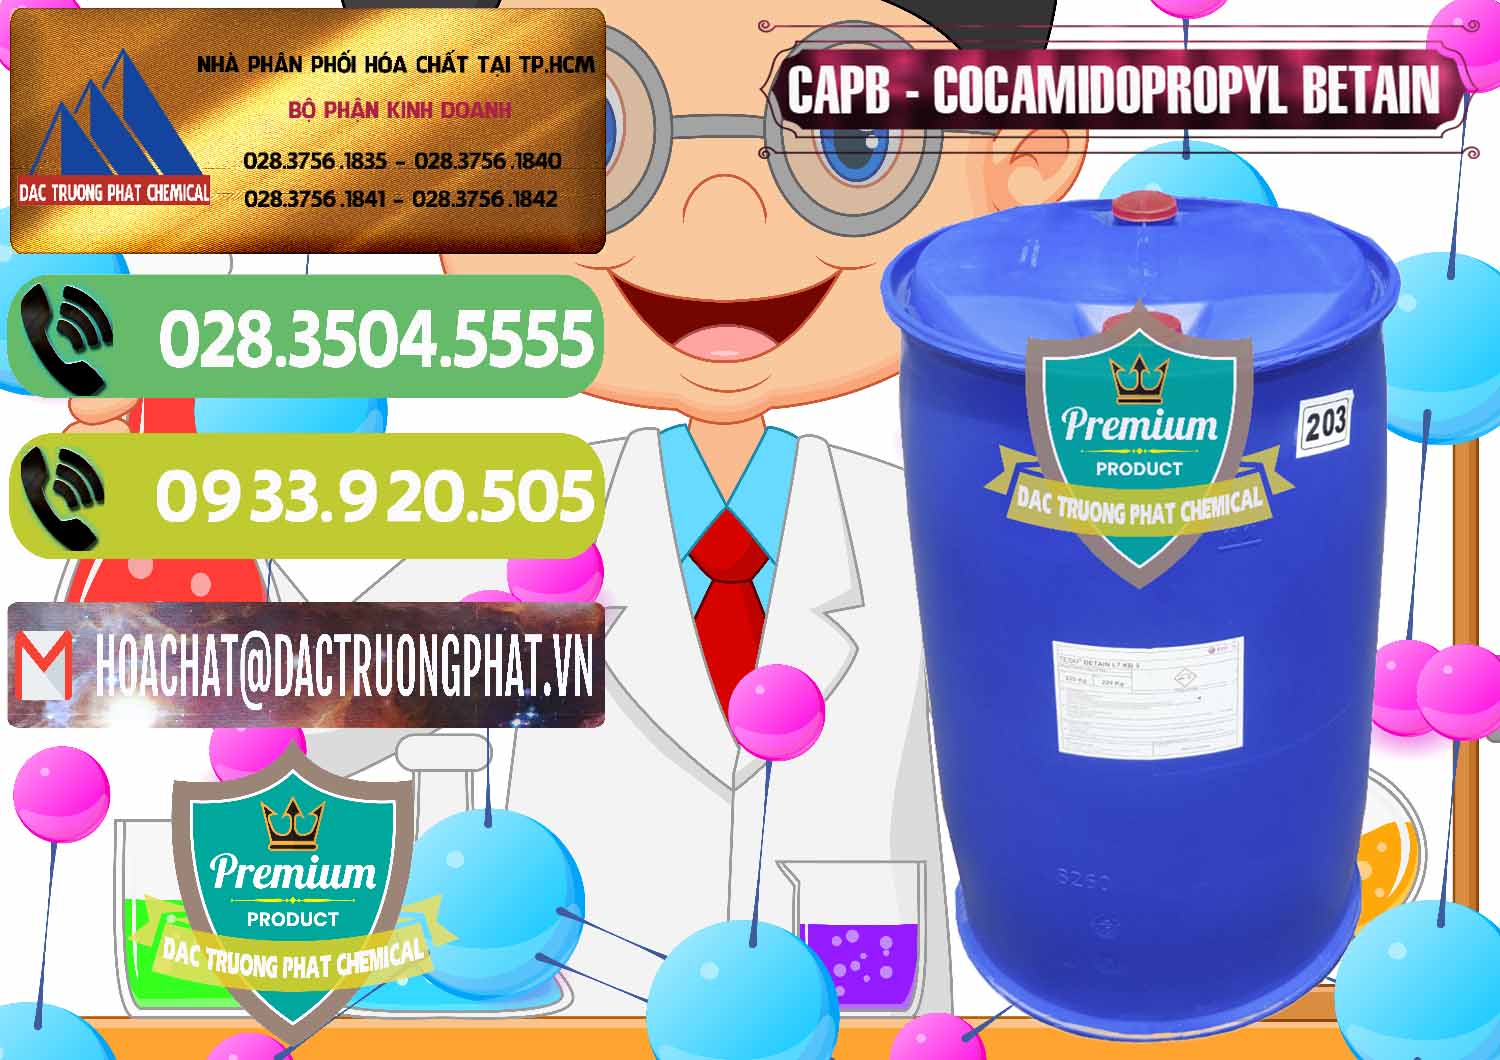 Công ty chuyên bán và cung cấp Cocamidopropyl Betaine - CAPB Tego Indonesia - 0327 - Cty bán & phân phối hóa chất tại TP.HCM - hoachatmientay.vn